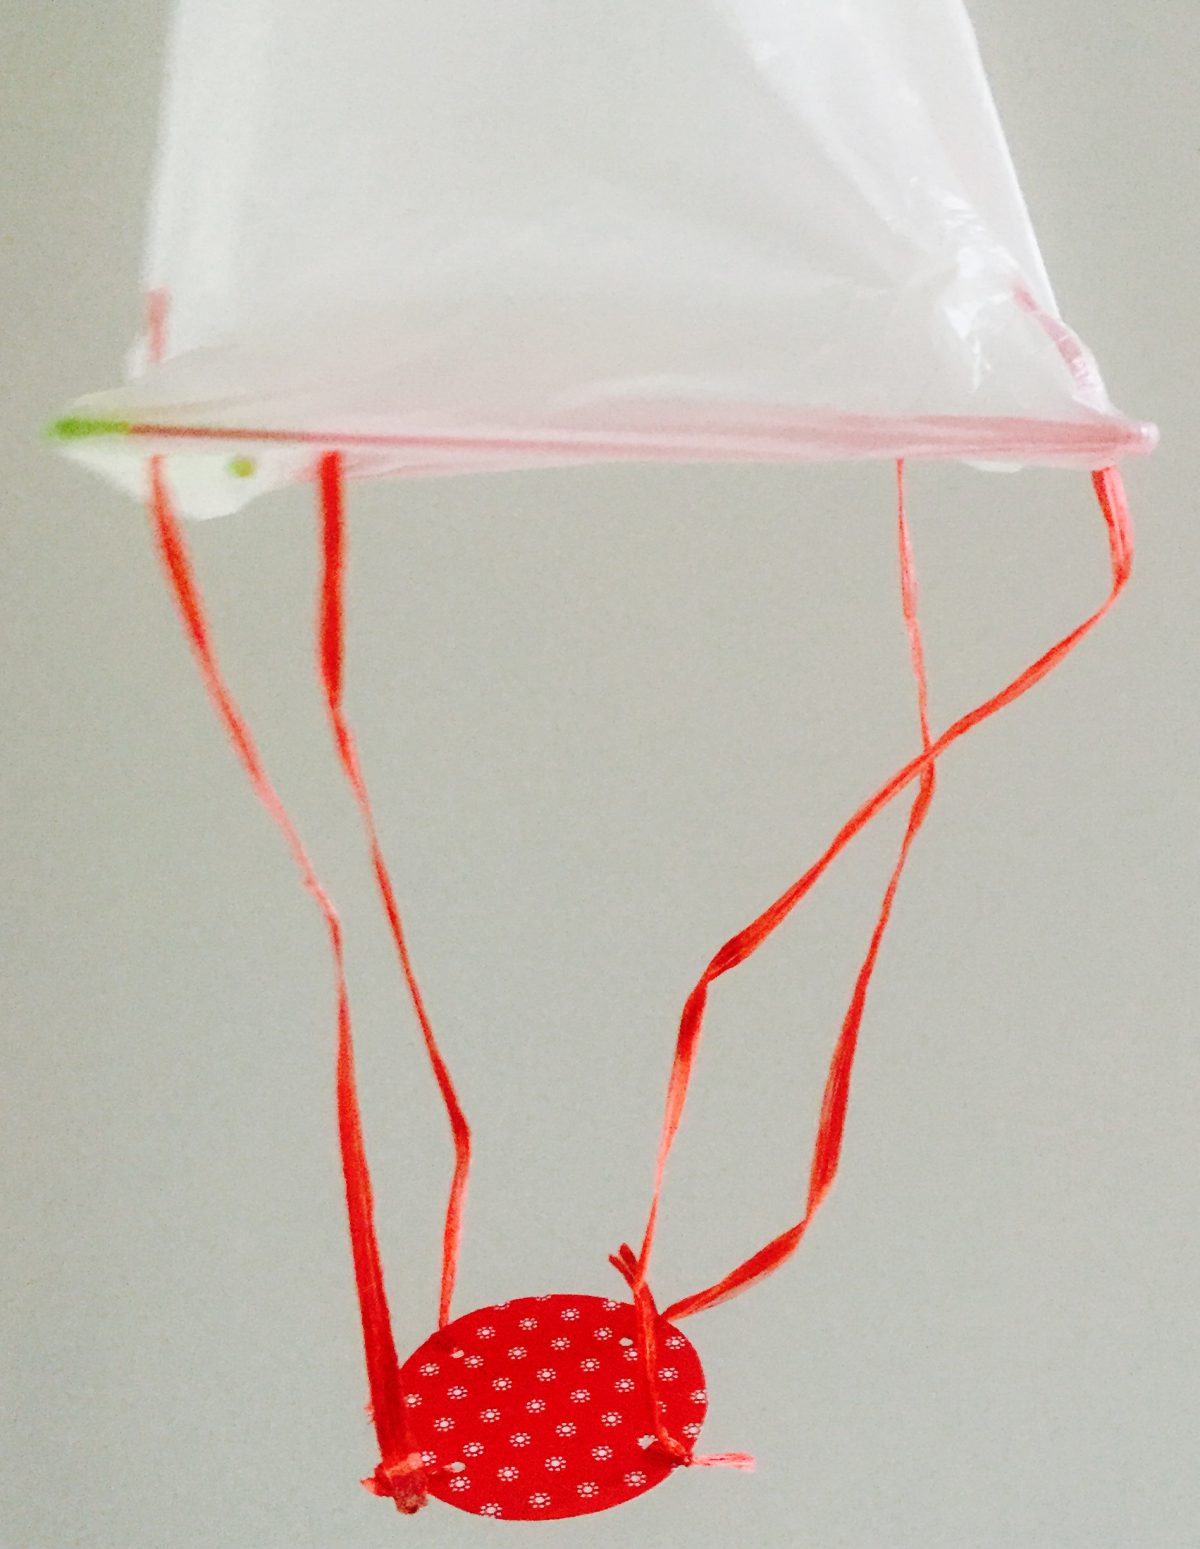 Ein selbst gebastelter Heißluftballon aus einer Plastiktüte, Bändern, Tesafilm und Pappe